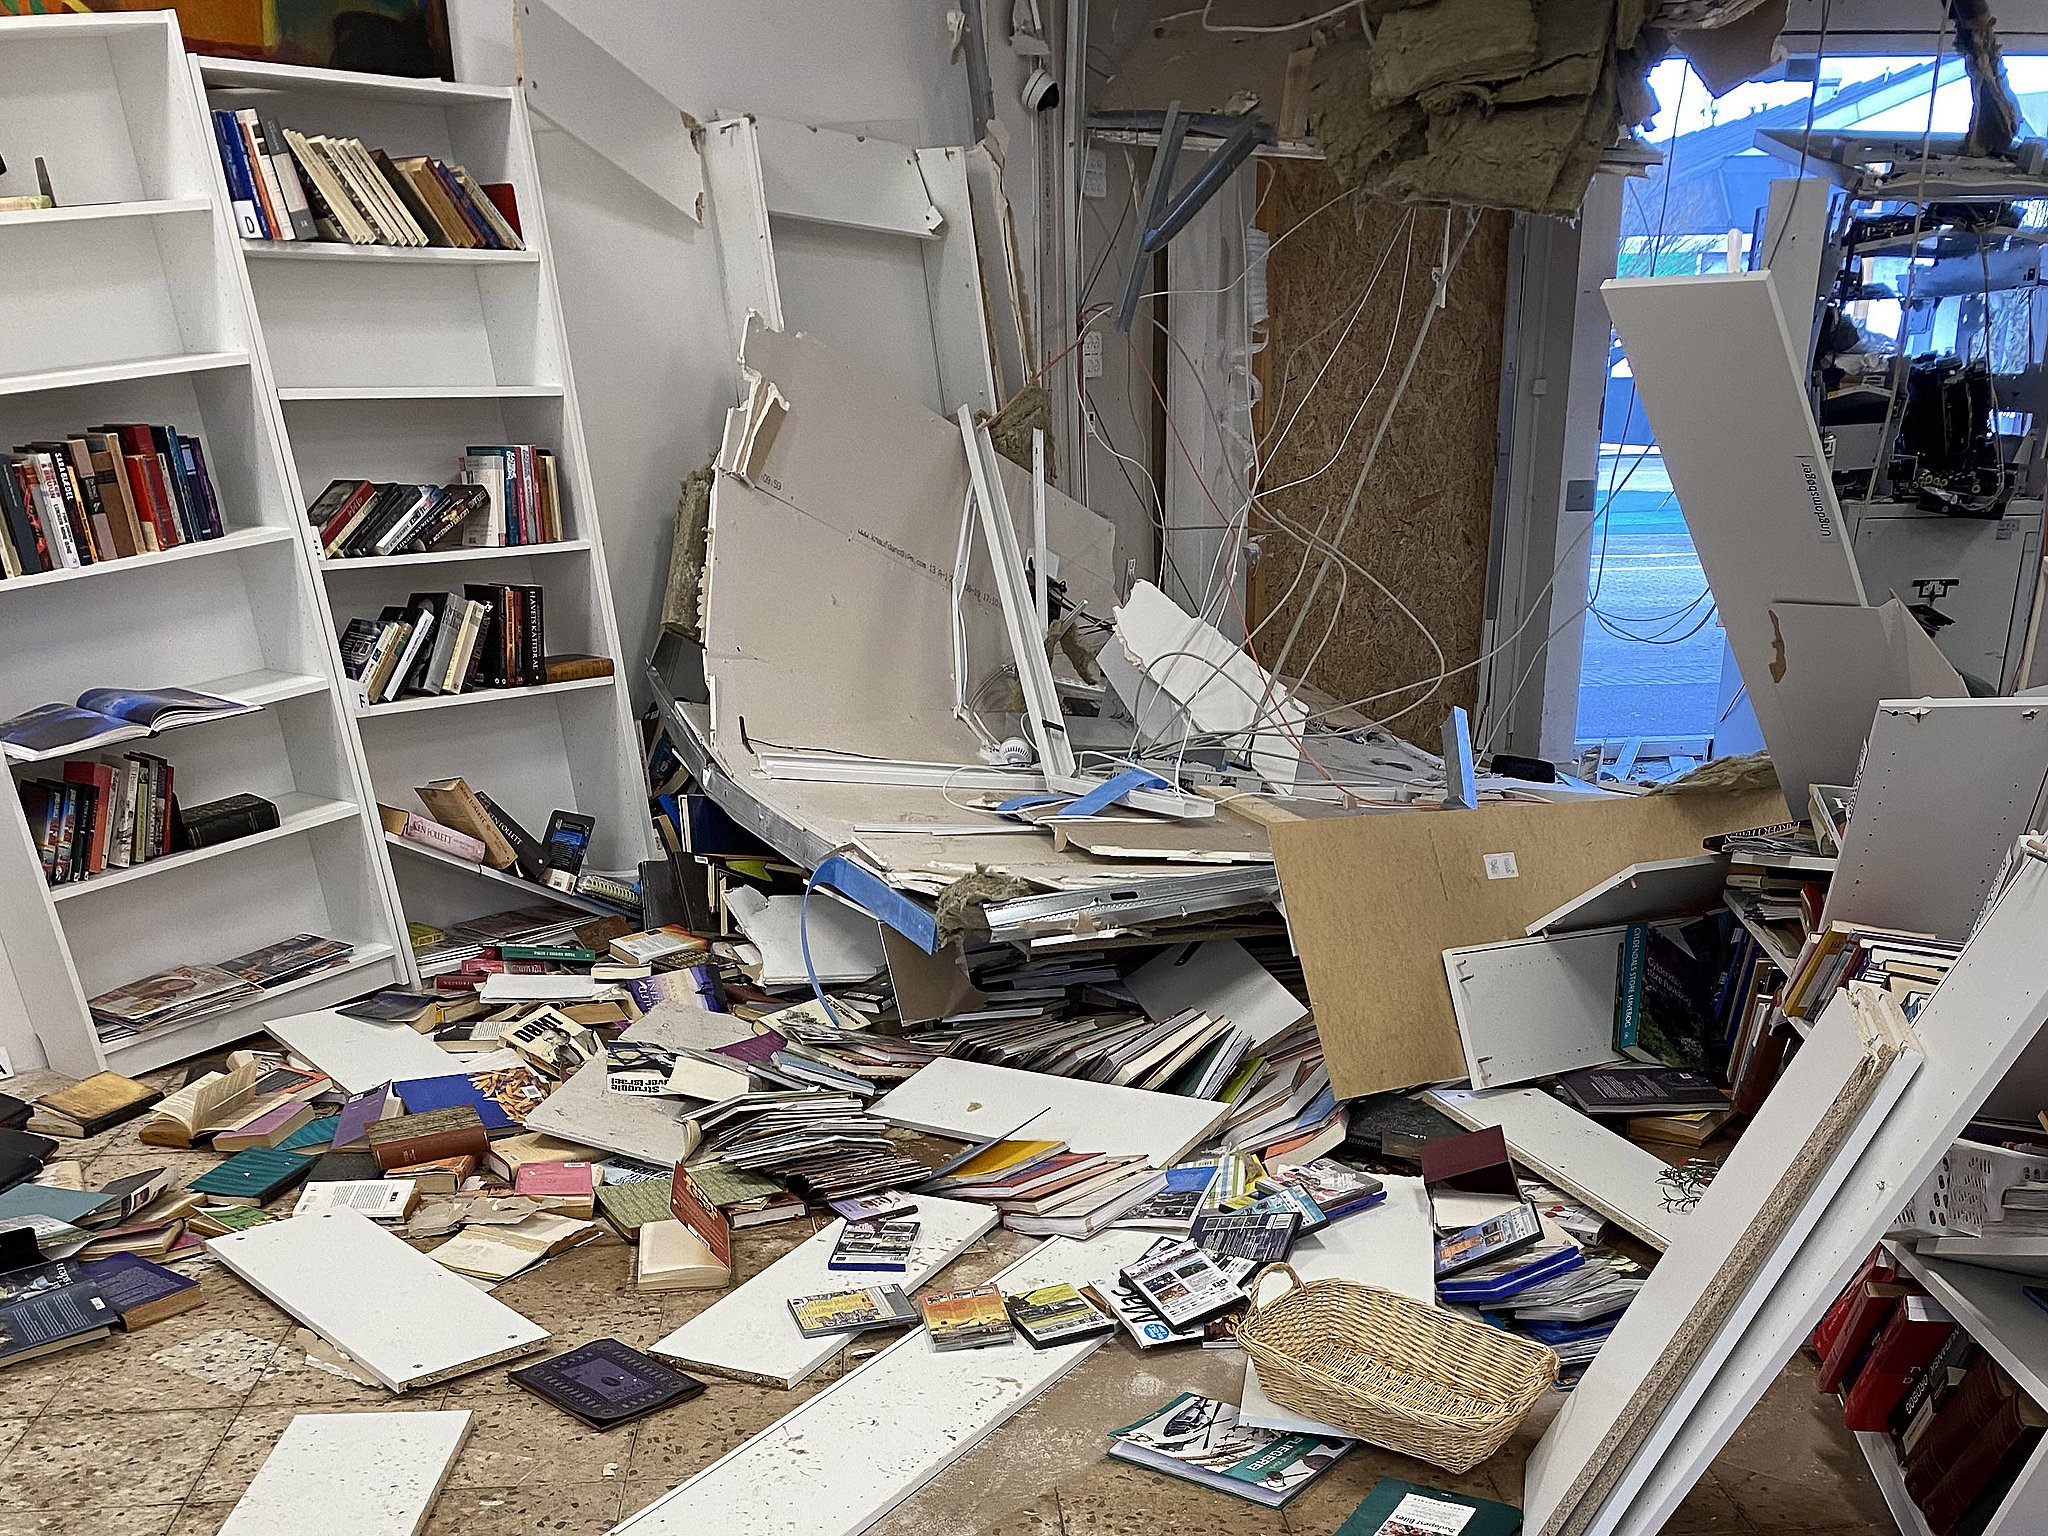 Butik blev smadret i voldsom eksplosion: "Det er frustrerende" | TV Kosmopol